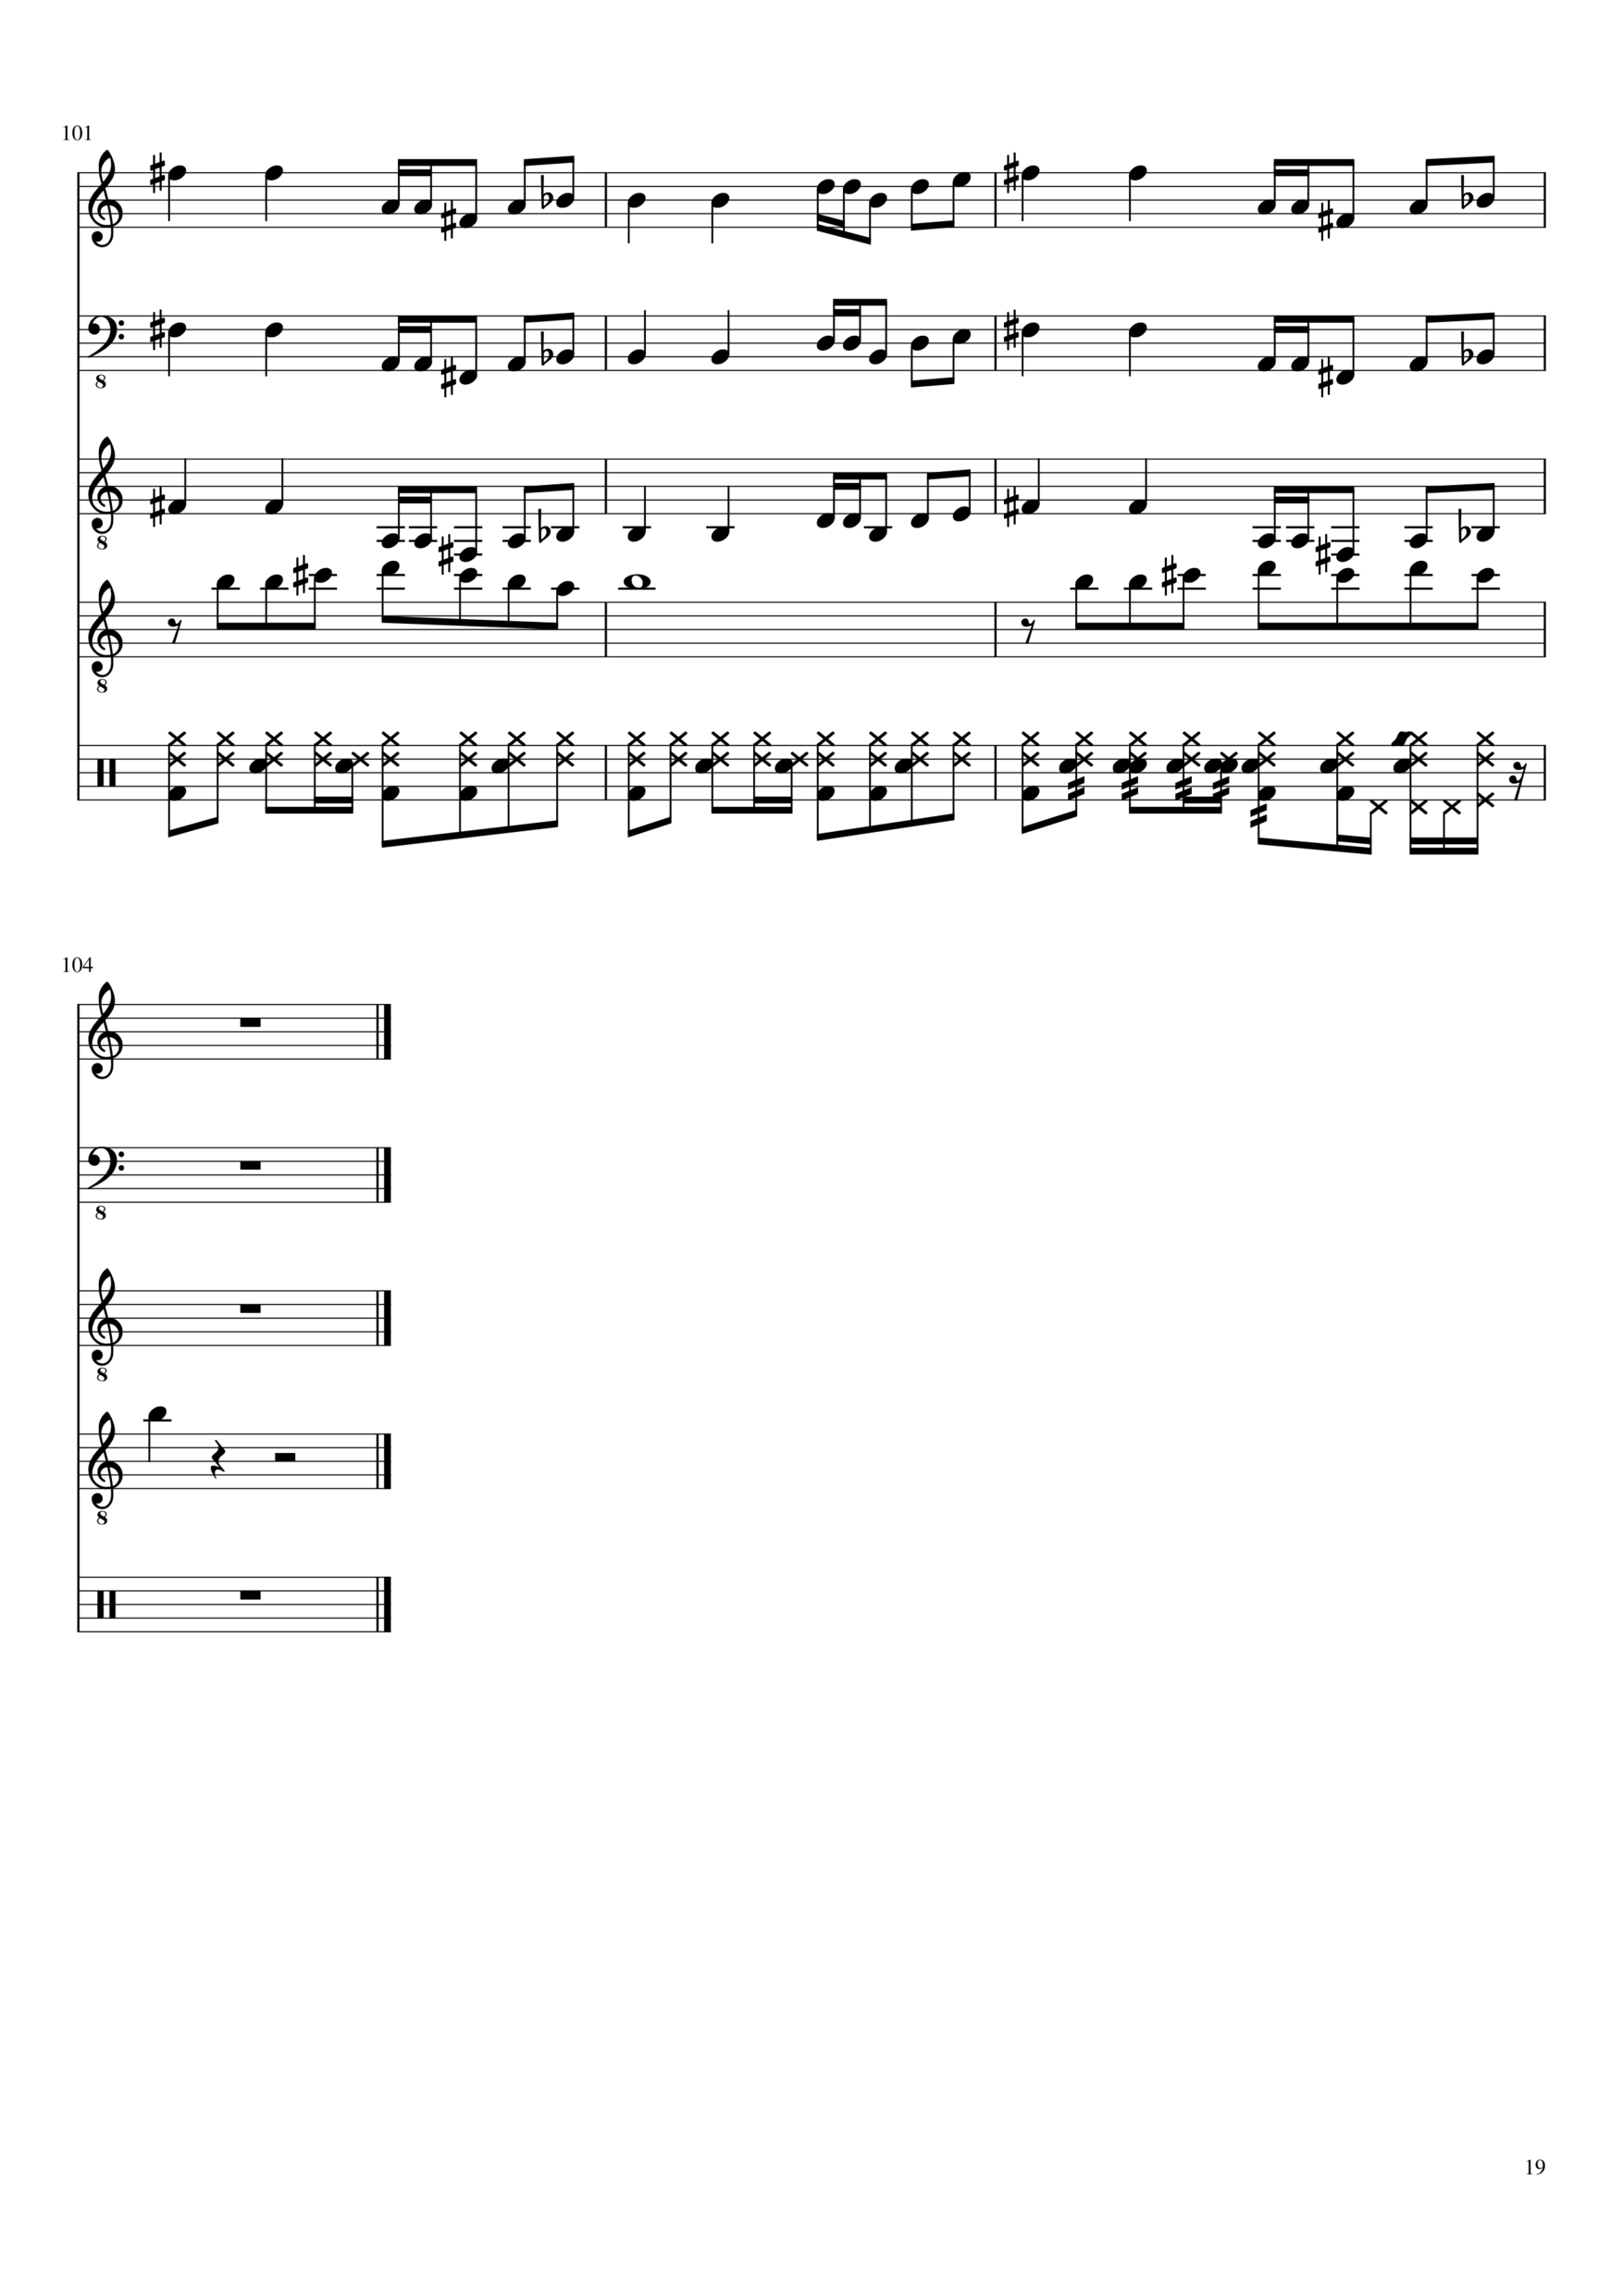 Vechnaya lyubov slide, Image 19